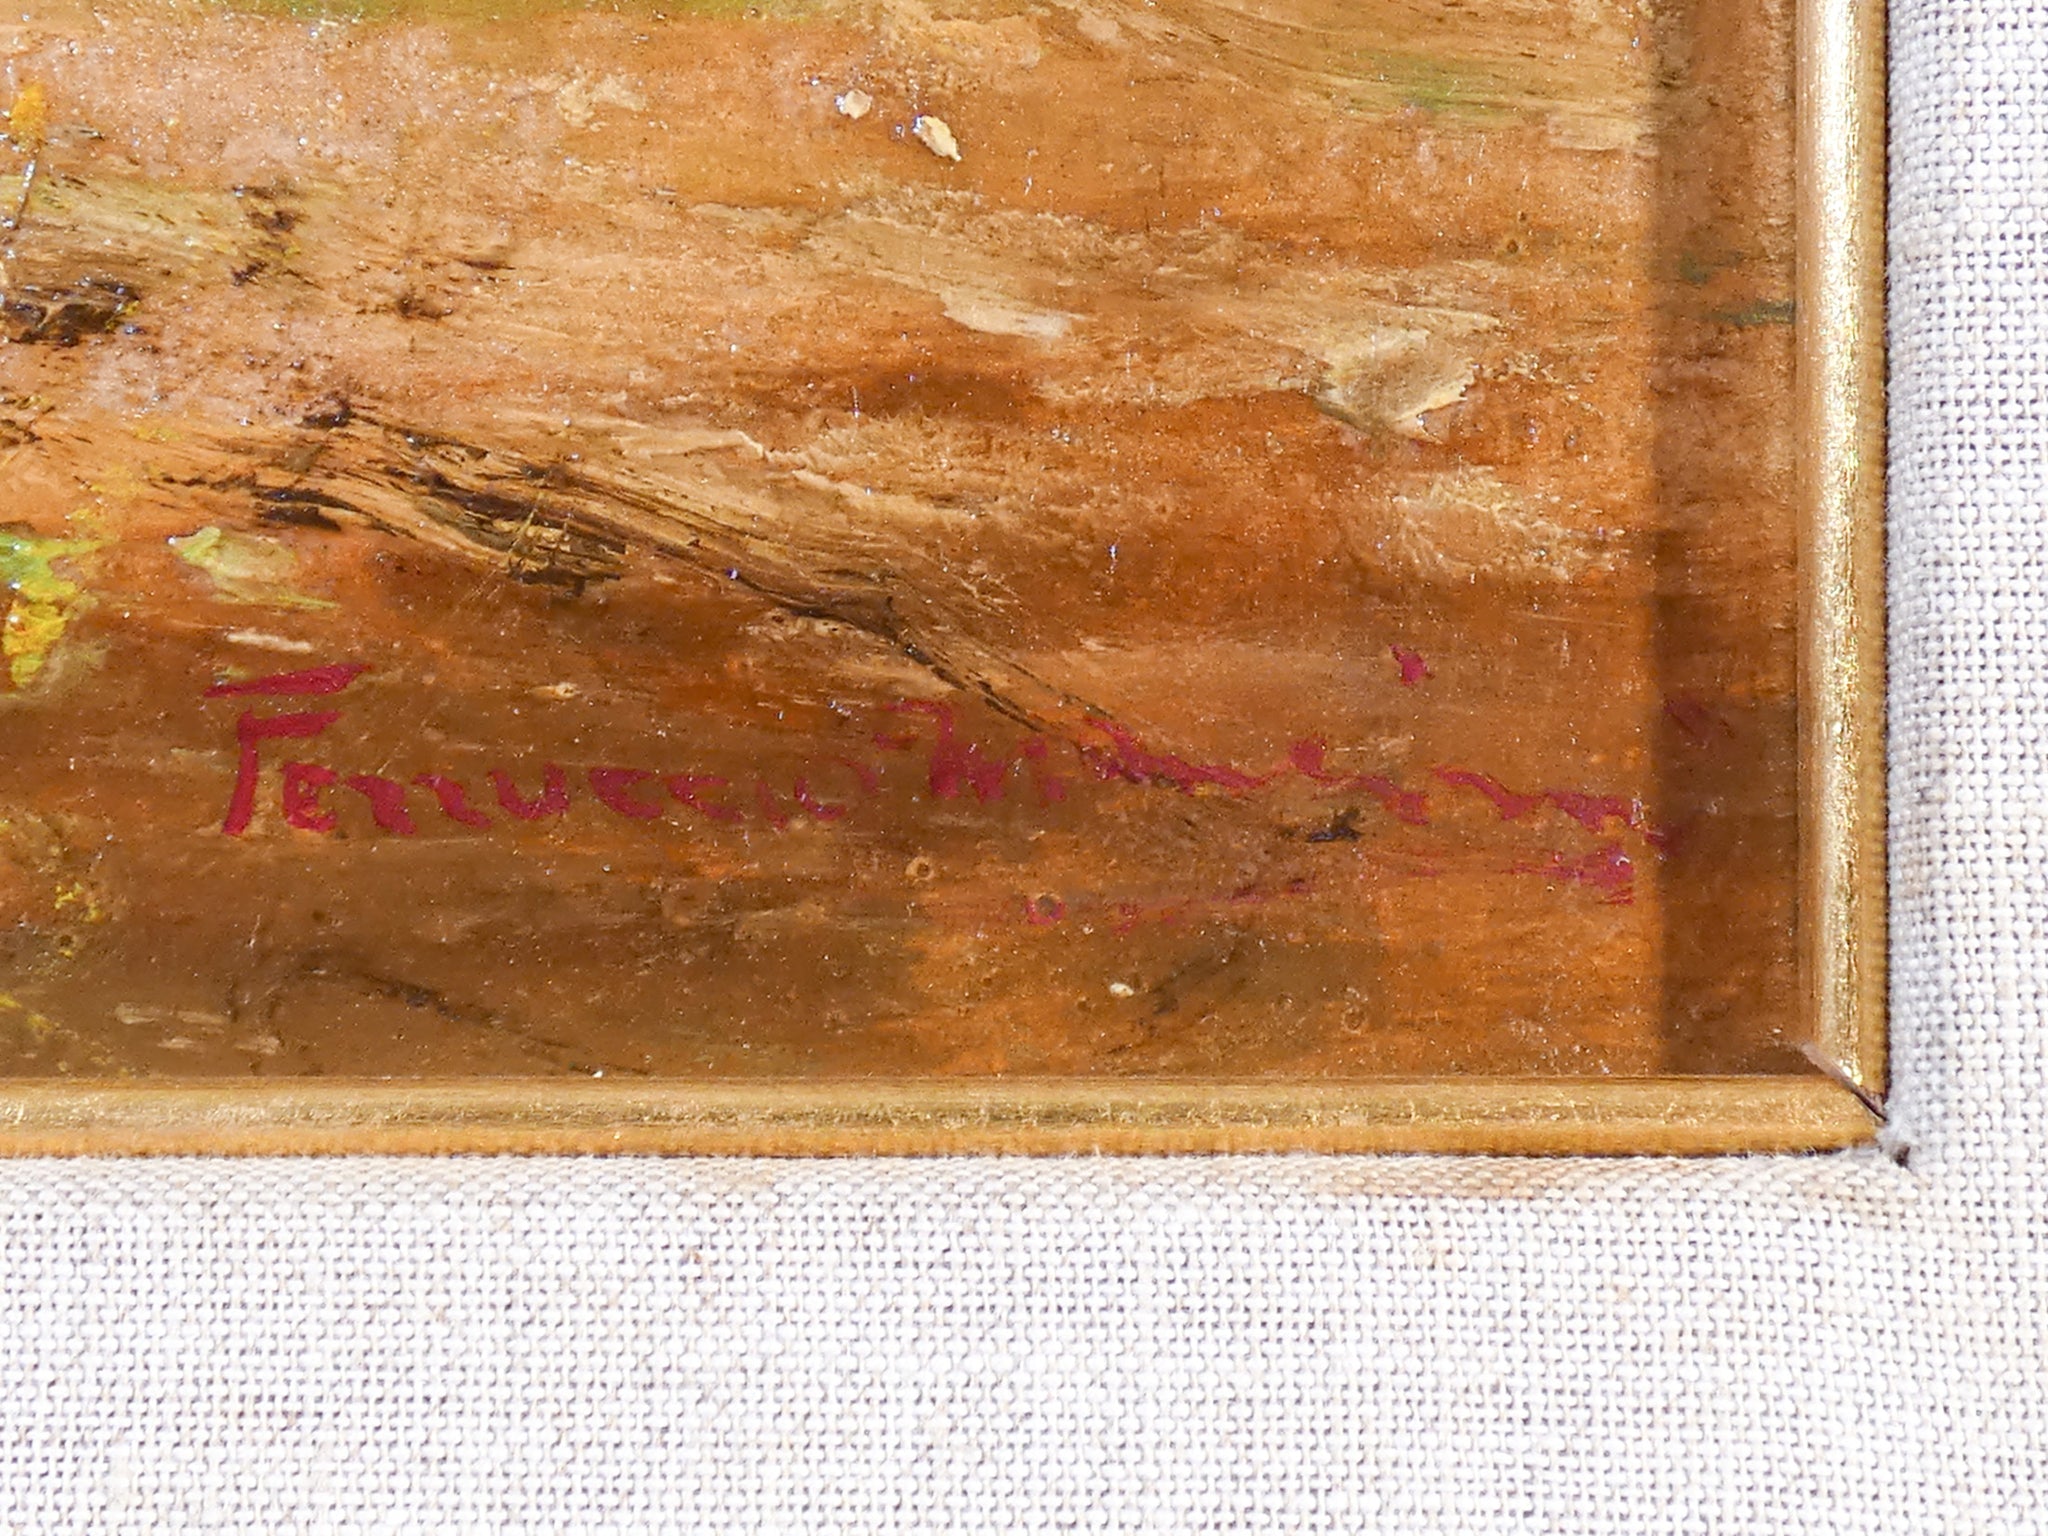 quadro firmato ferruccio mancini bambine lago ragazze epoca 900 dipinto olio 